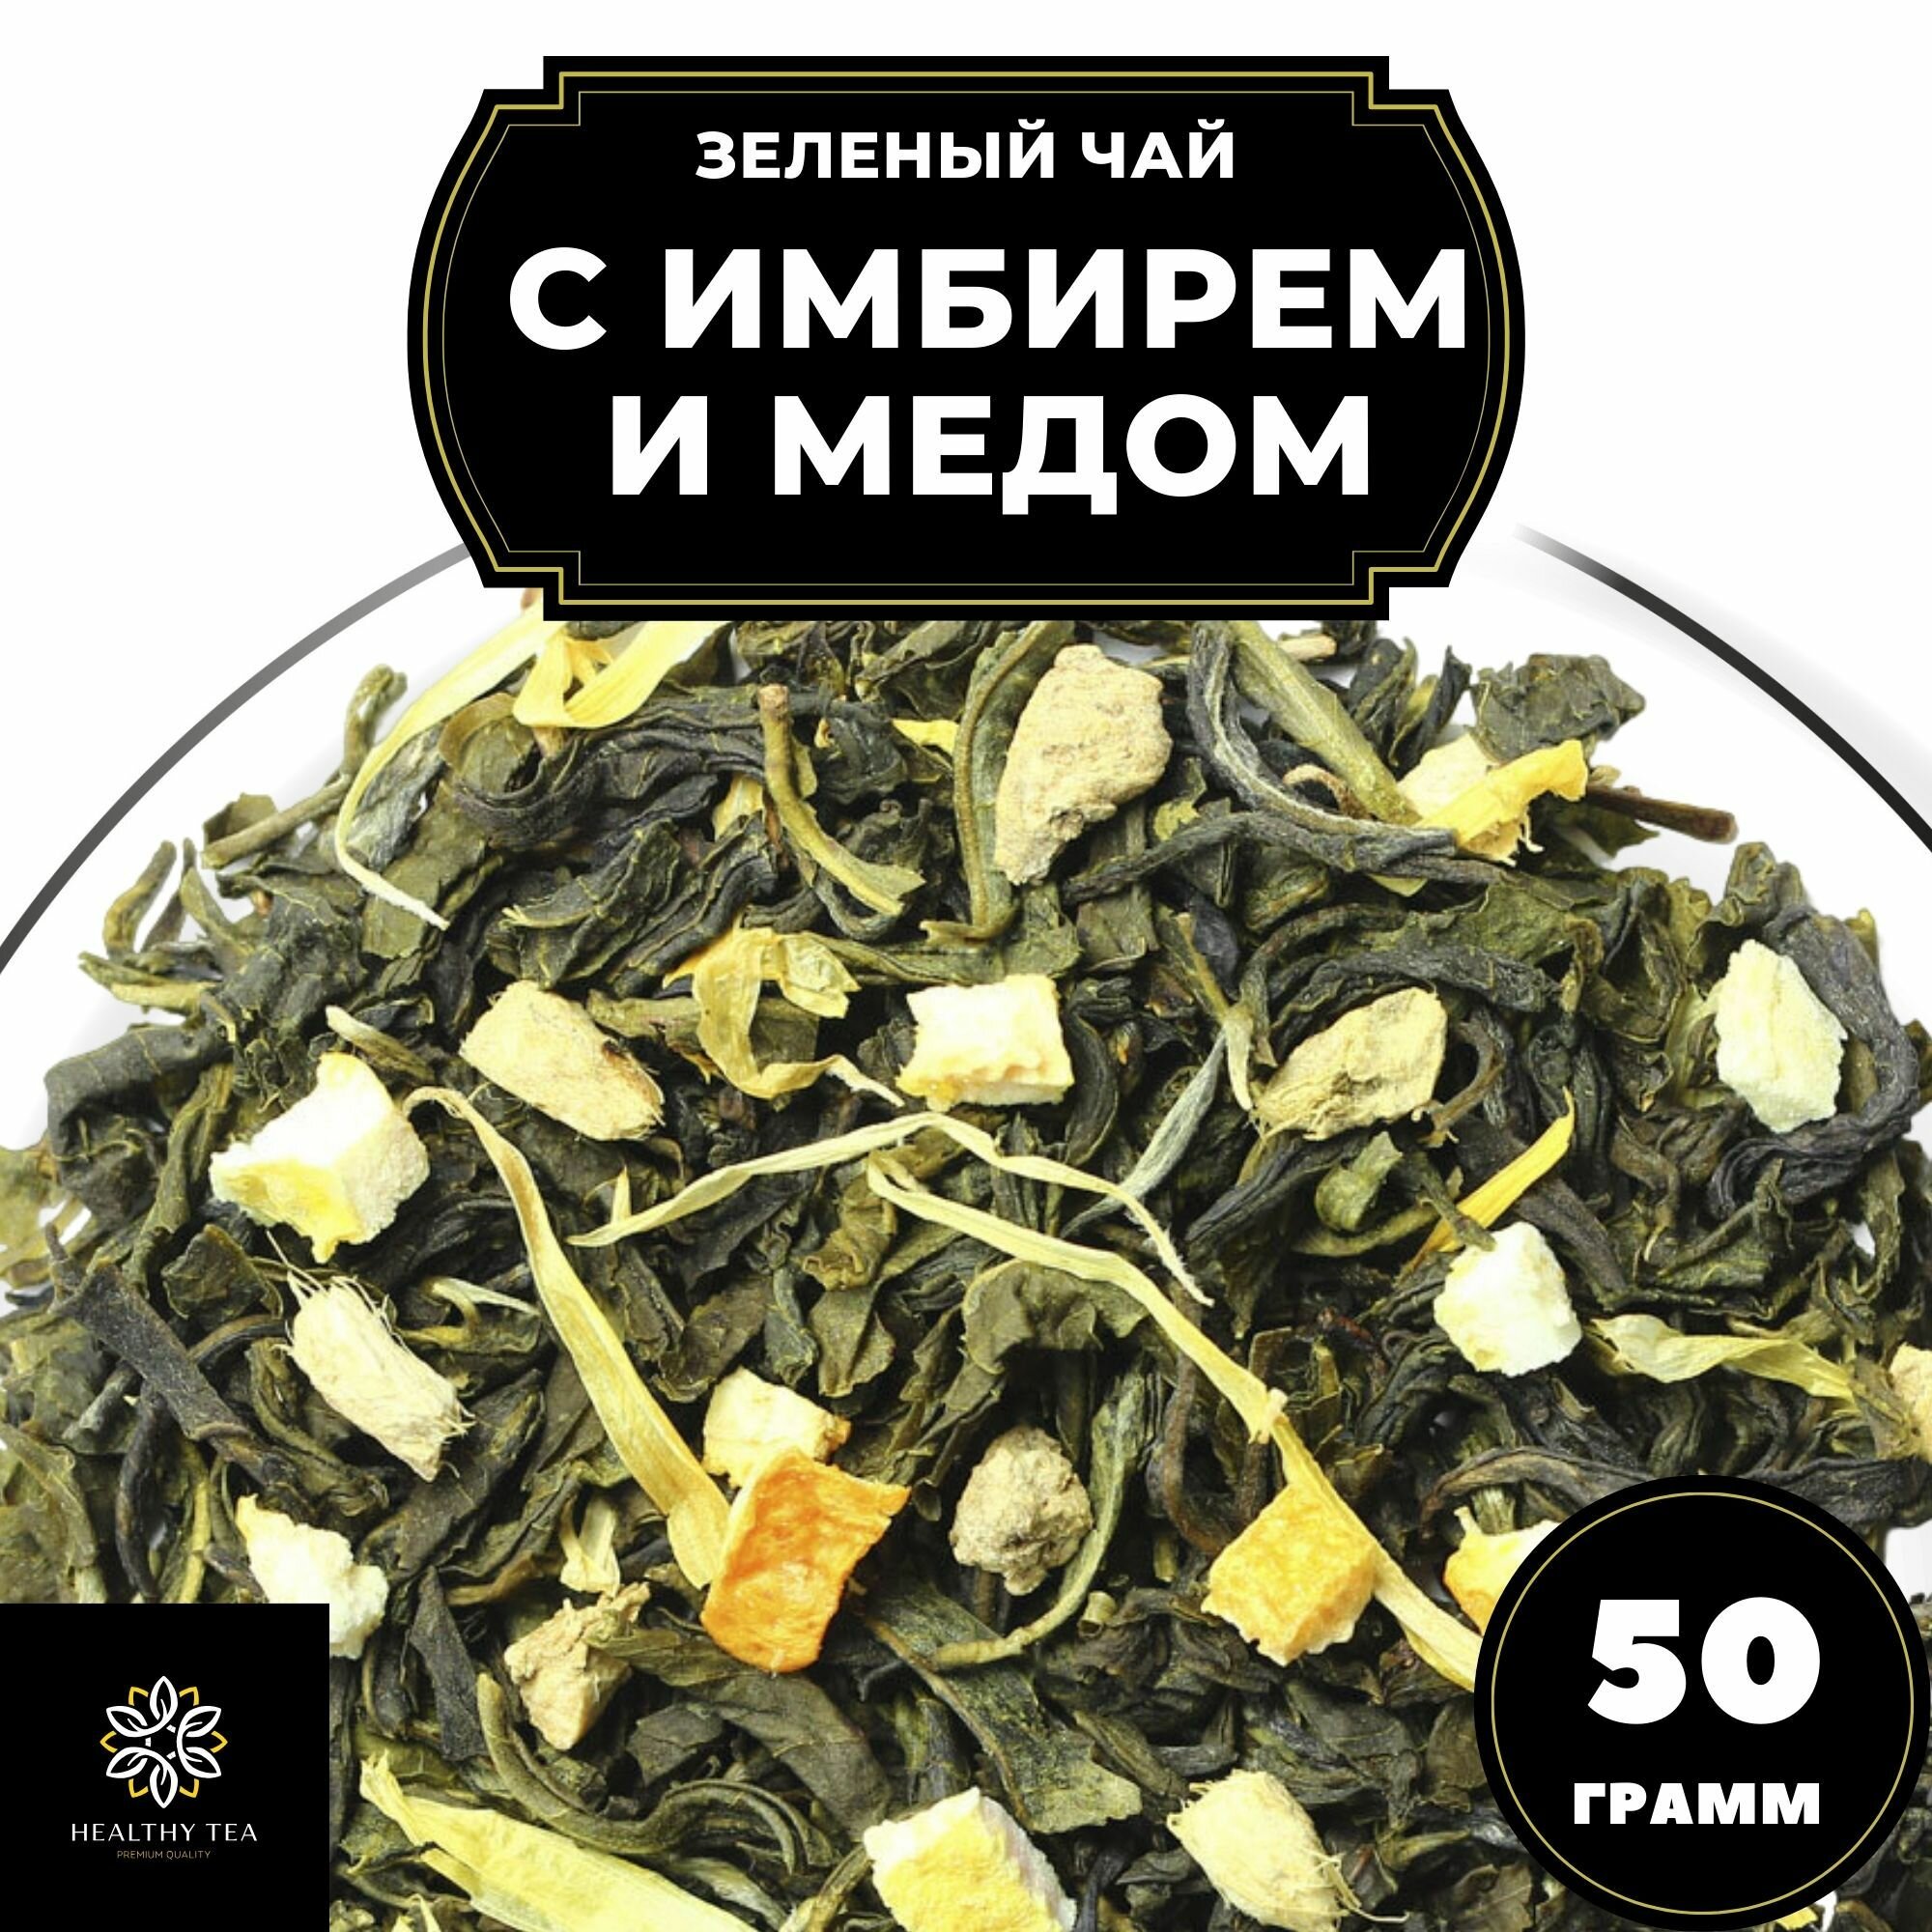 Китайский Зеленый чай с имбирем, лимоном и апельсином Имбирь-Мед Полезный чай / HEALTHY TEA, 50 г